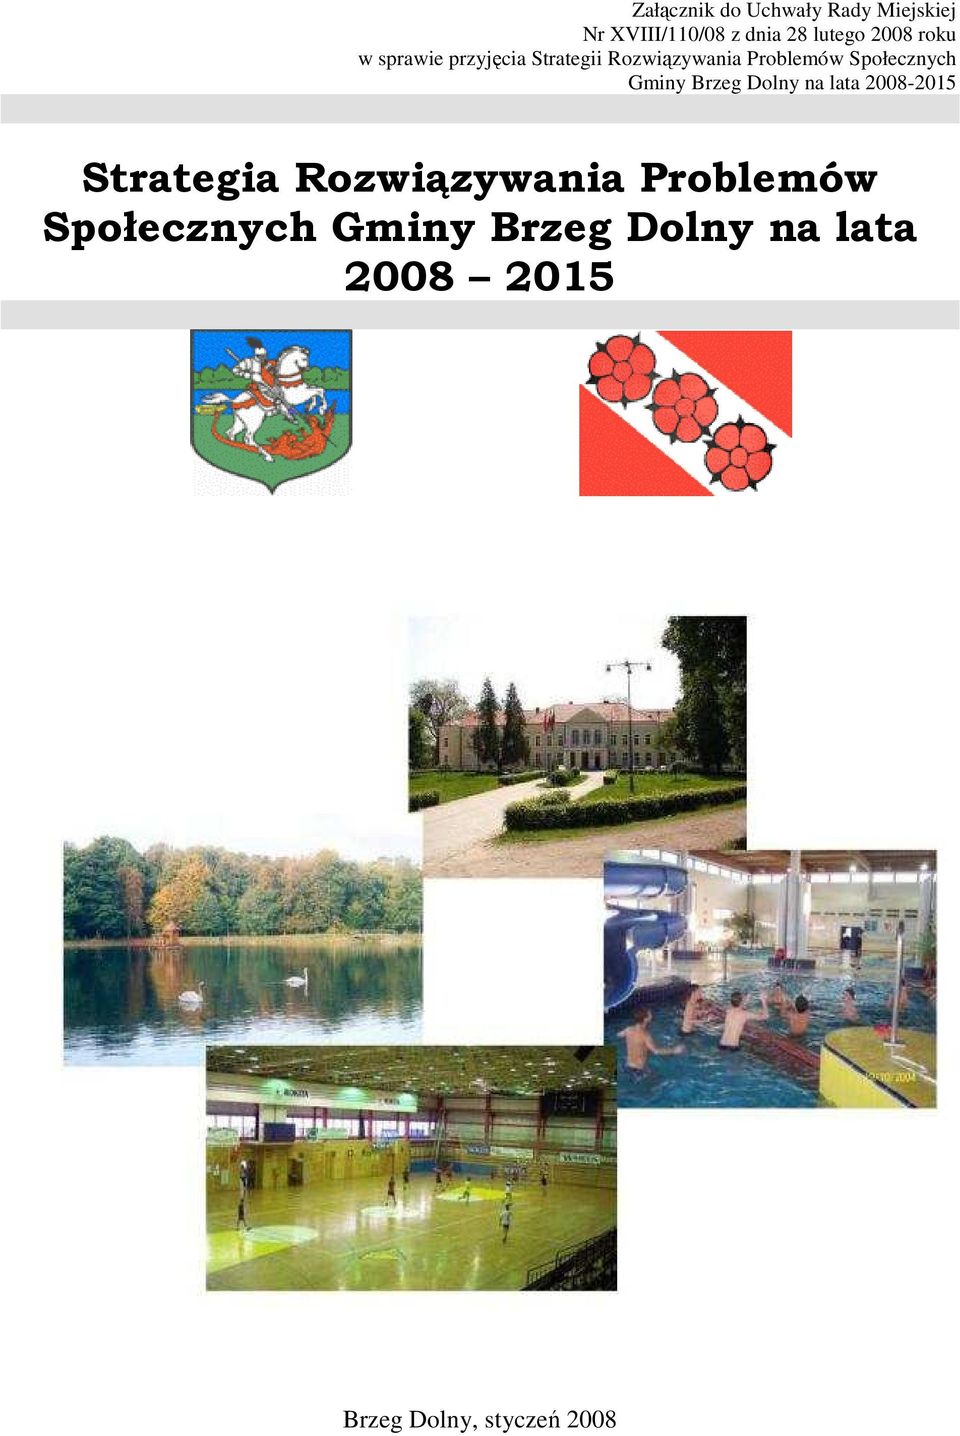 Społecznych Gminy Brzeg Dolny na lata 2008-2015 Strategia Rozwiązywania